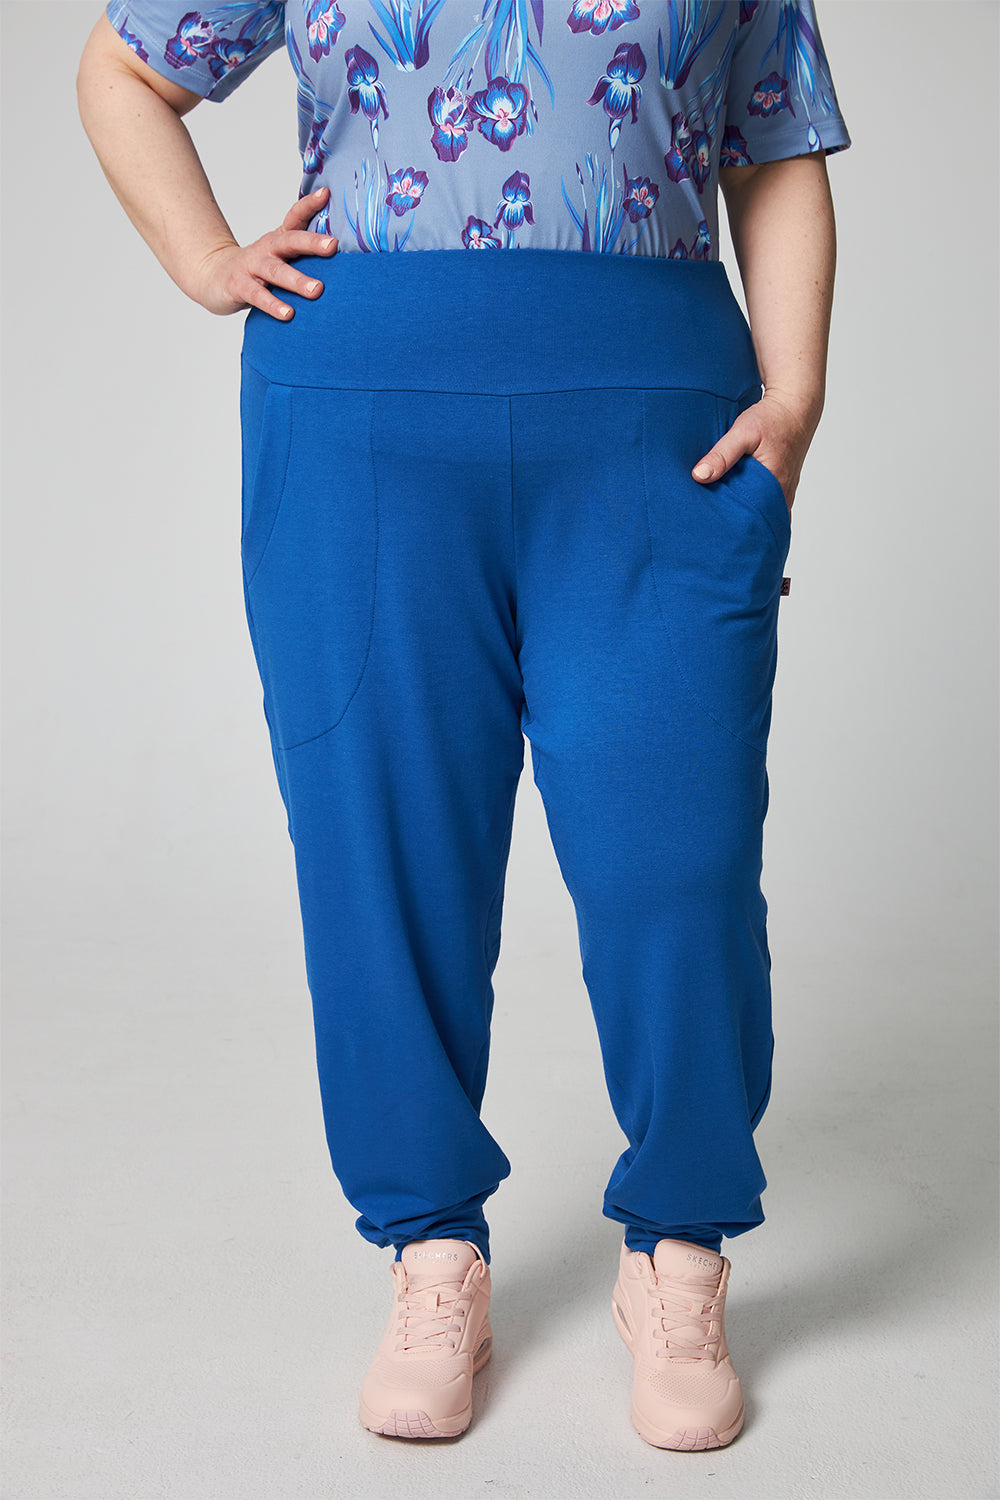 Pantalon de jogging haut de gamme - bambou biologique - Bleu royal